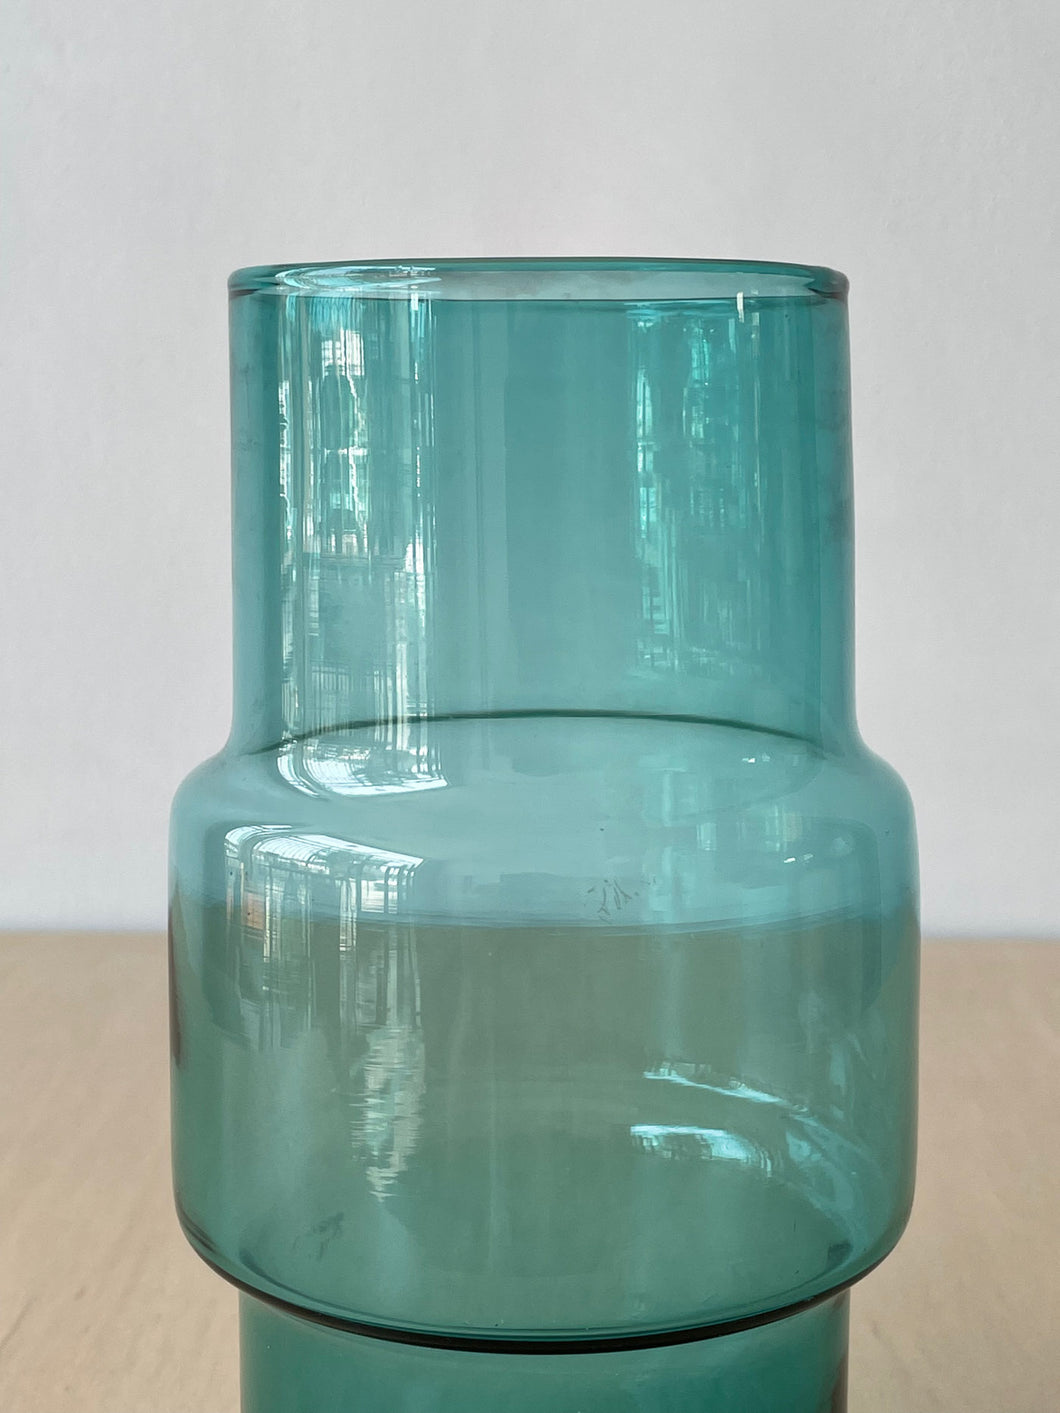 Vintage Teal Glass Vase